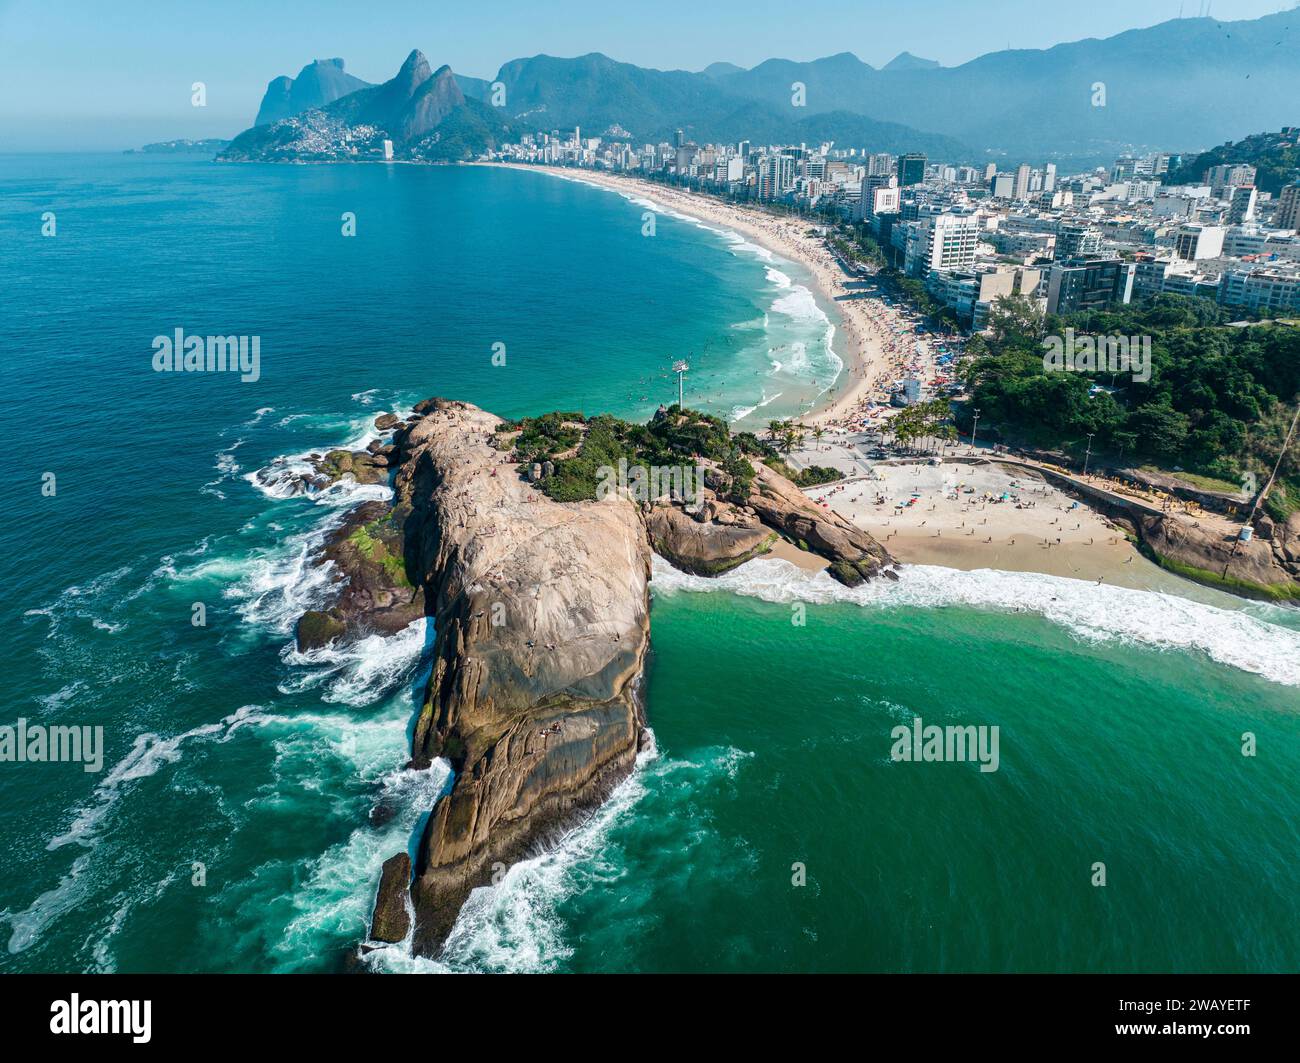 Vista aerea della spiaggia di Diabo e della spiaggia di Ipanema, Pedra do Arpoador. Persone che prendono il sole e giocano sulla spiaggia, sport di mare. Rio de Janeiro. Brasile Foto Stock